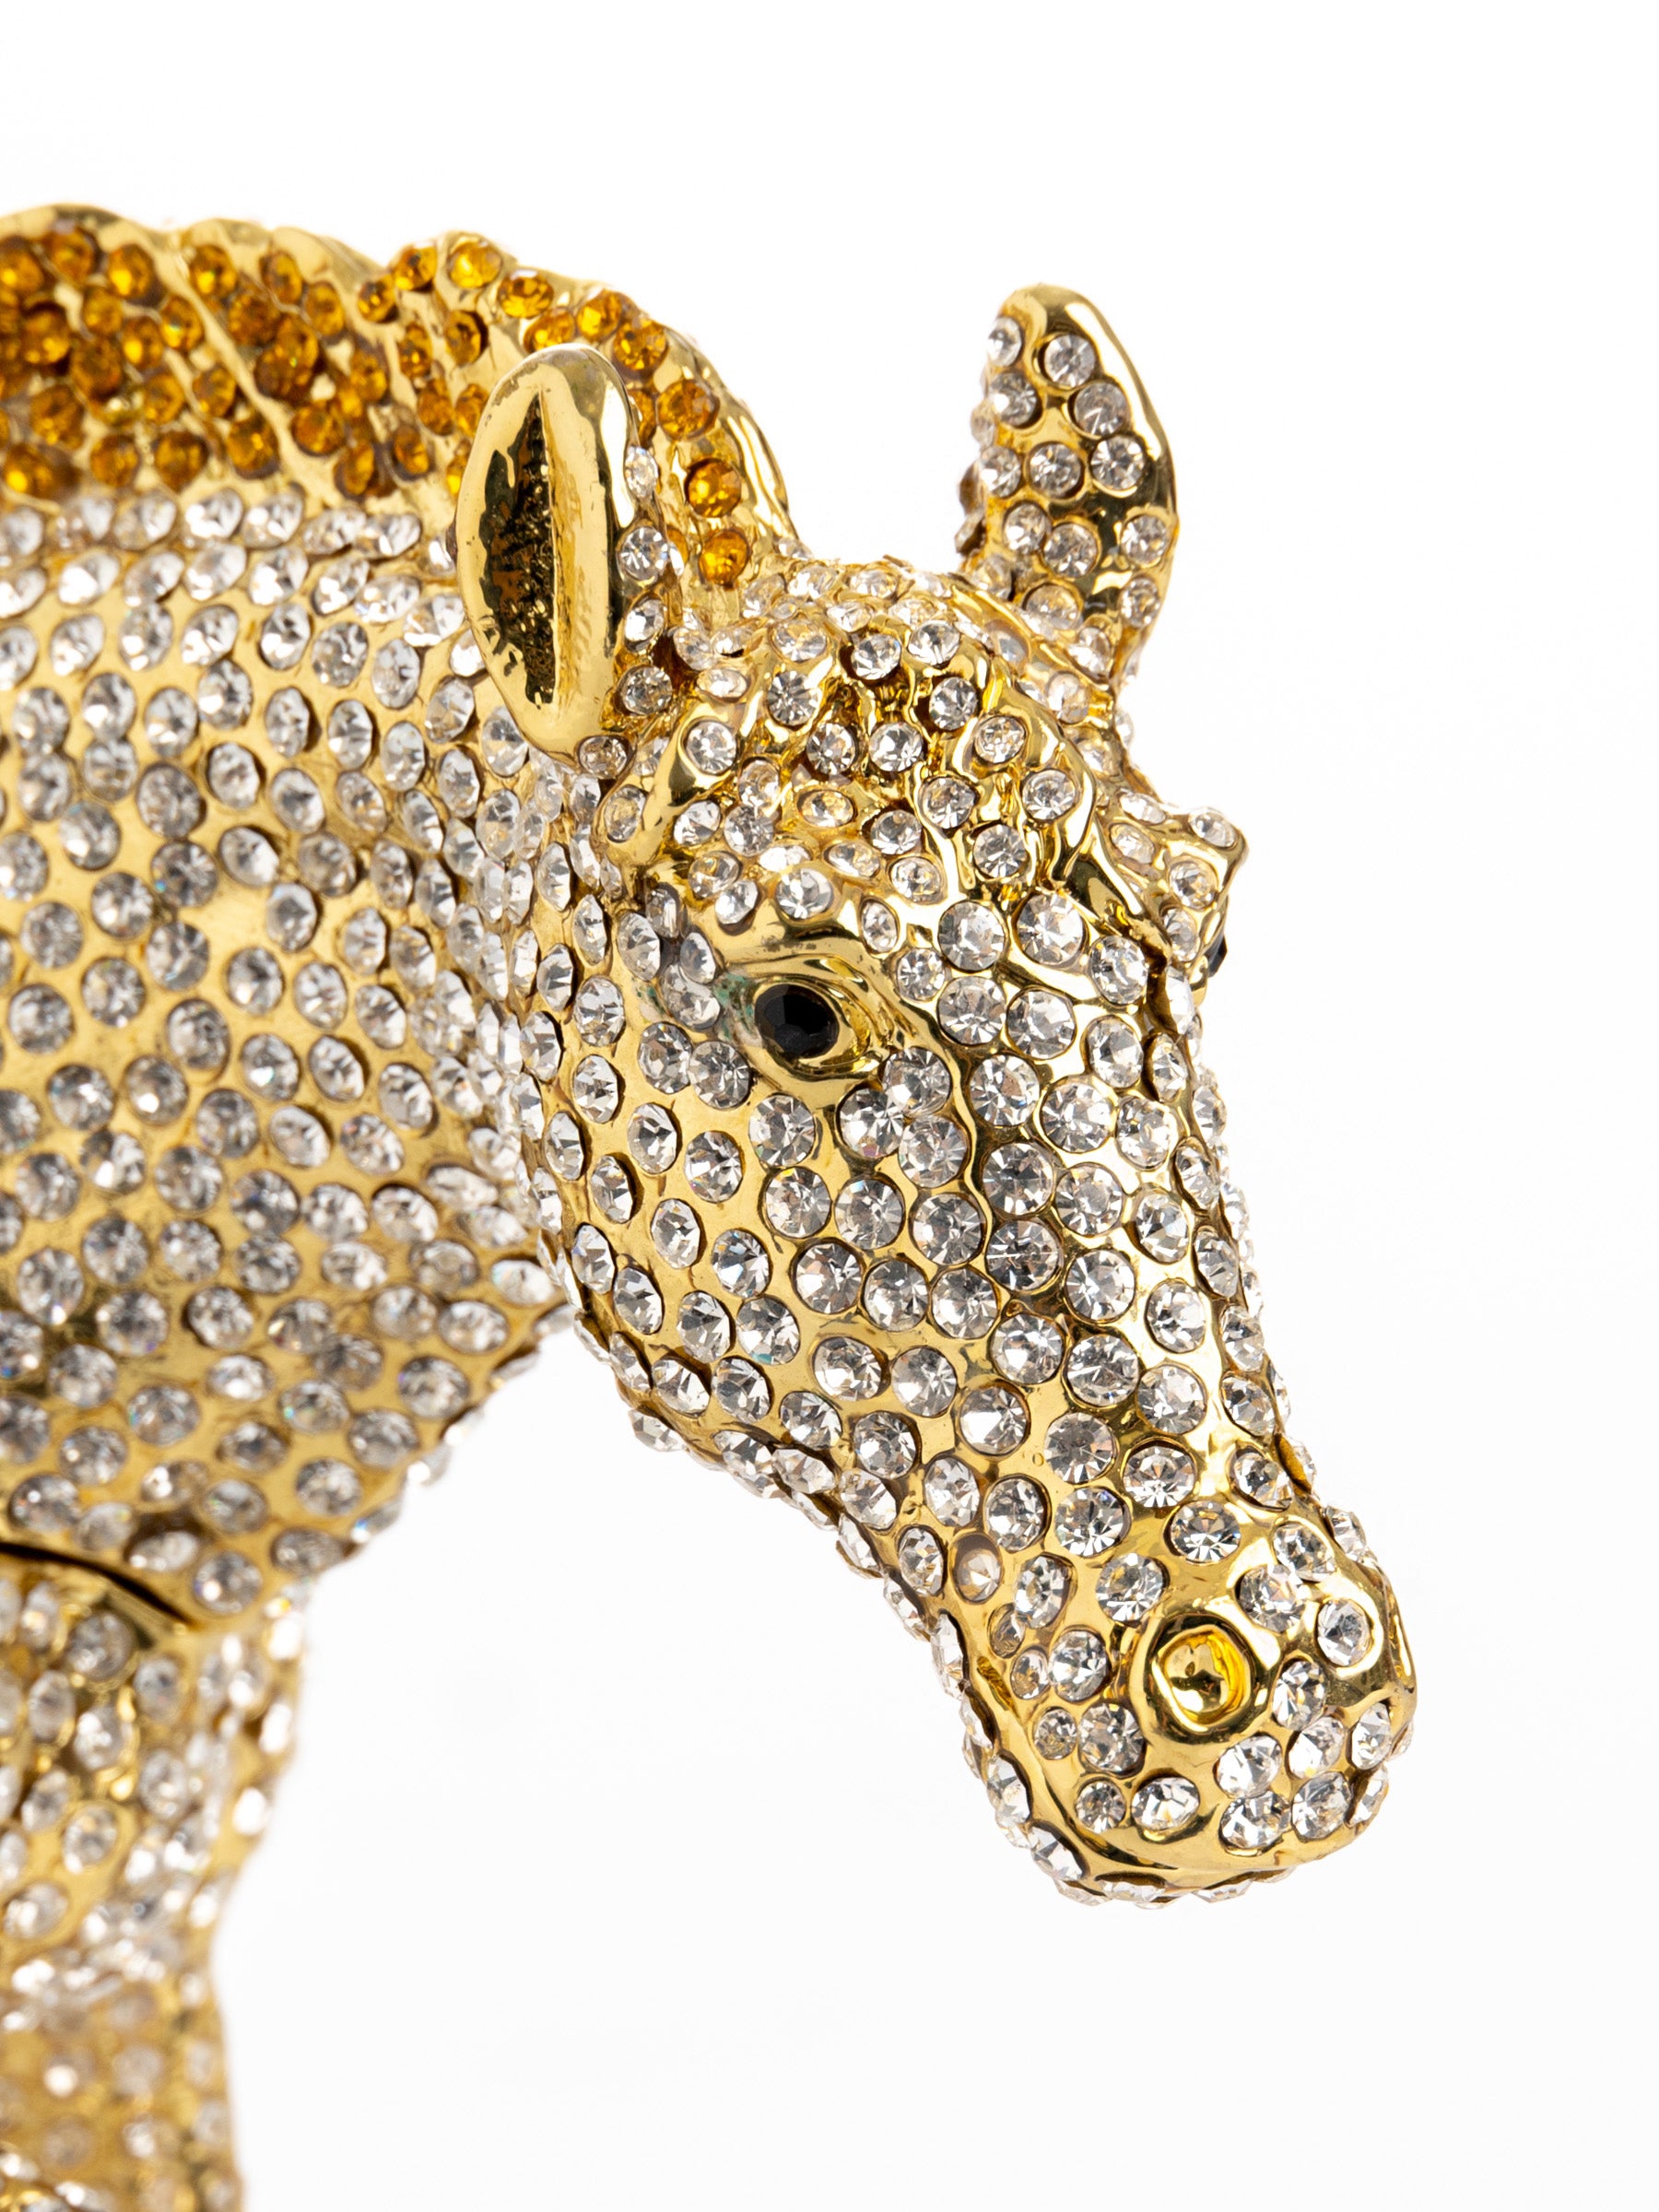 Großes goldenes Pferd mit weißen Kristallen verziert